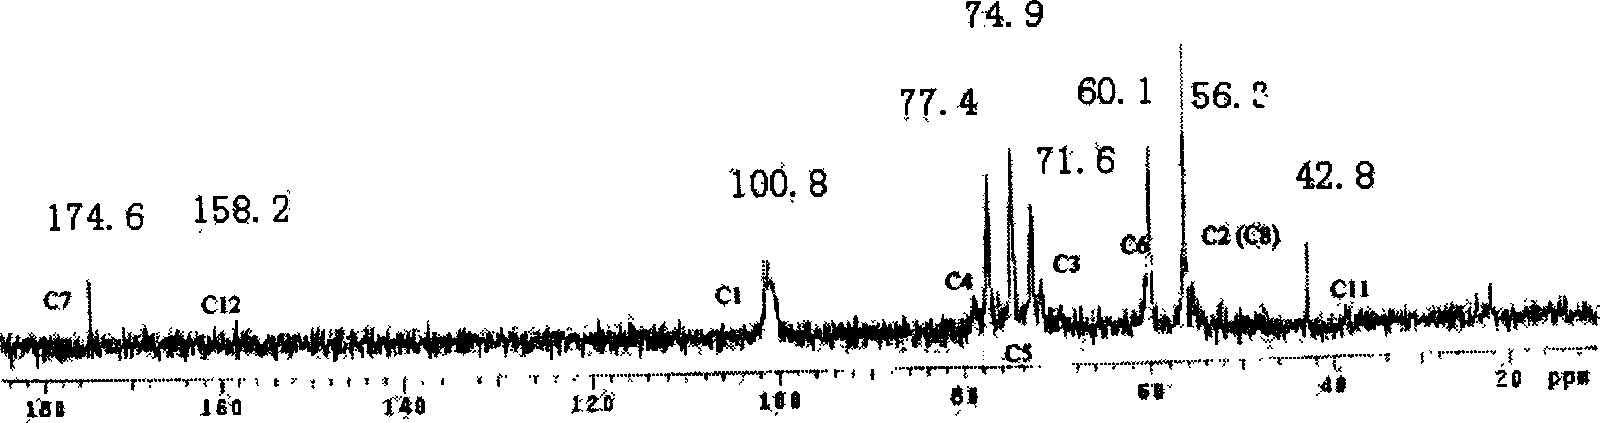 Method for perparing anticoagulant composed of chitosan-arginine